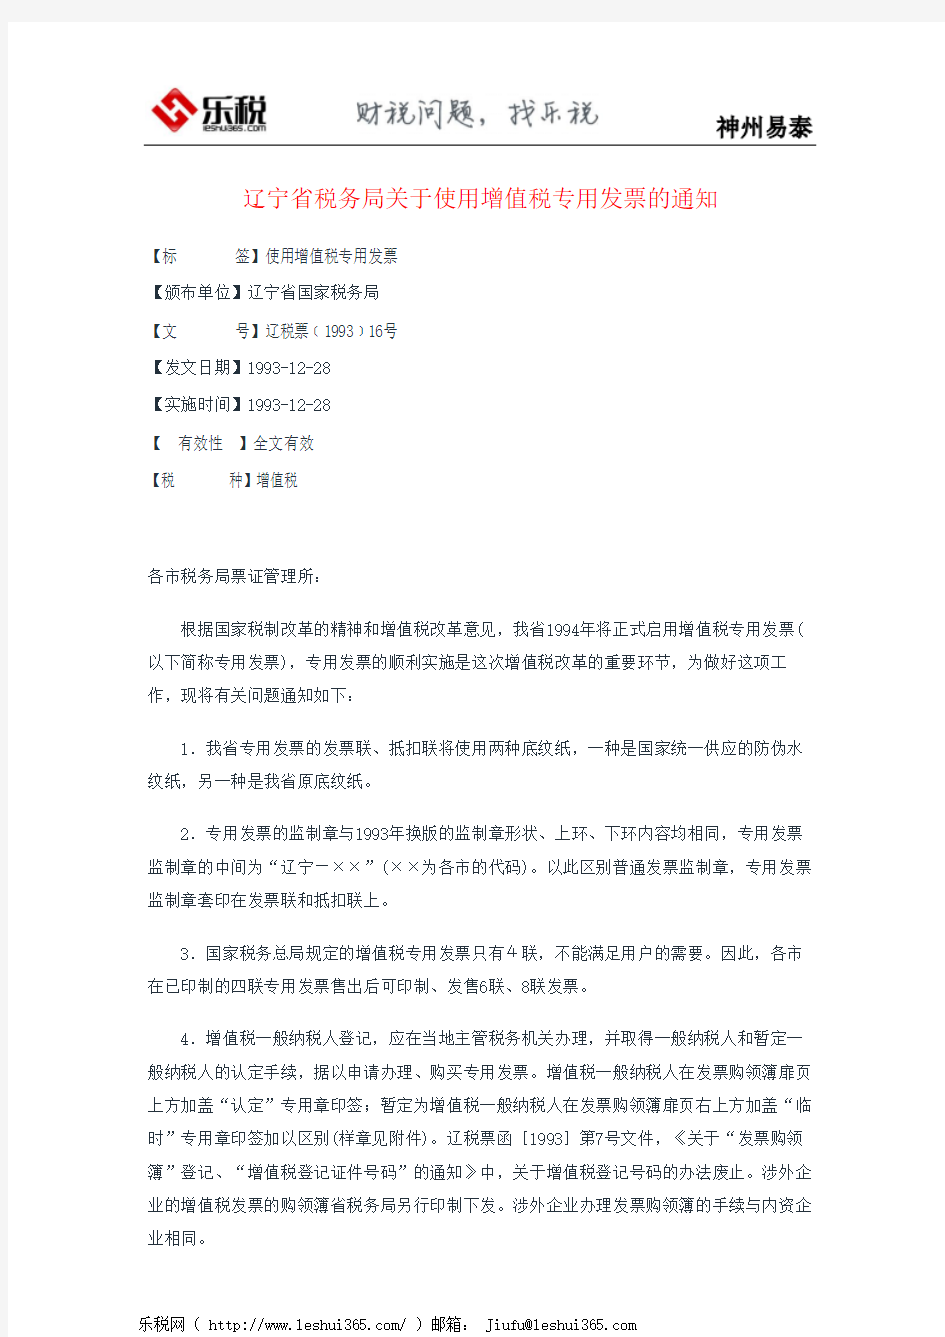 辽宁省税务局关于使用增值税专用发票的通知